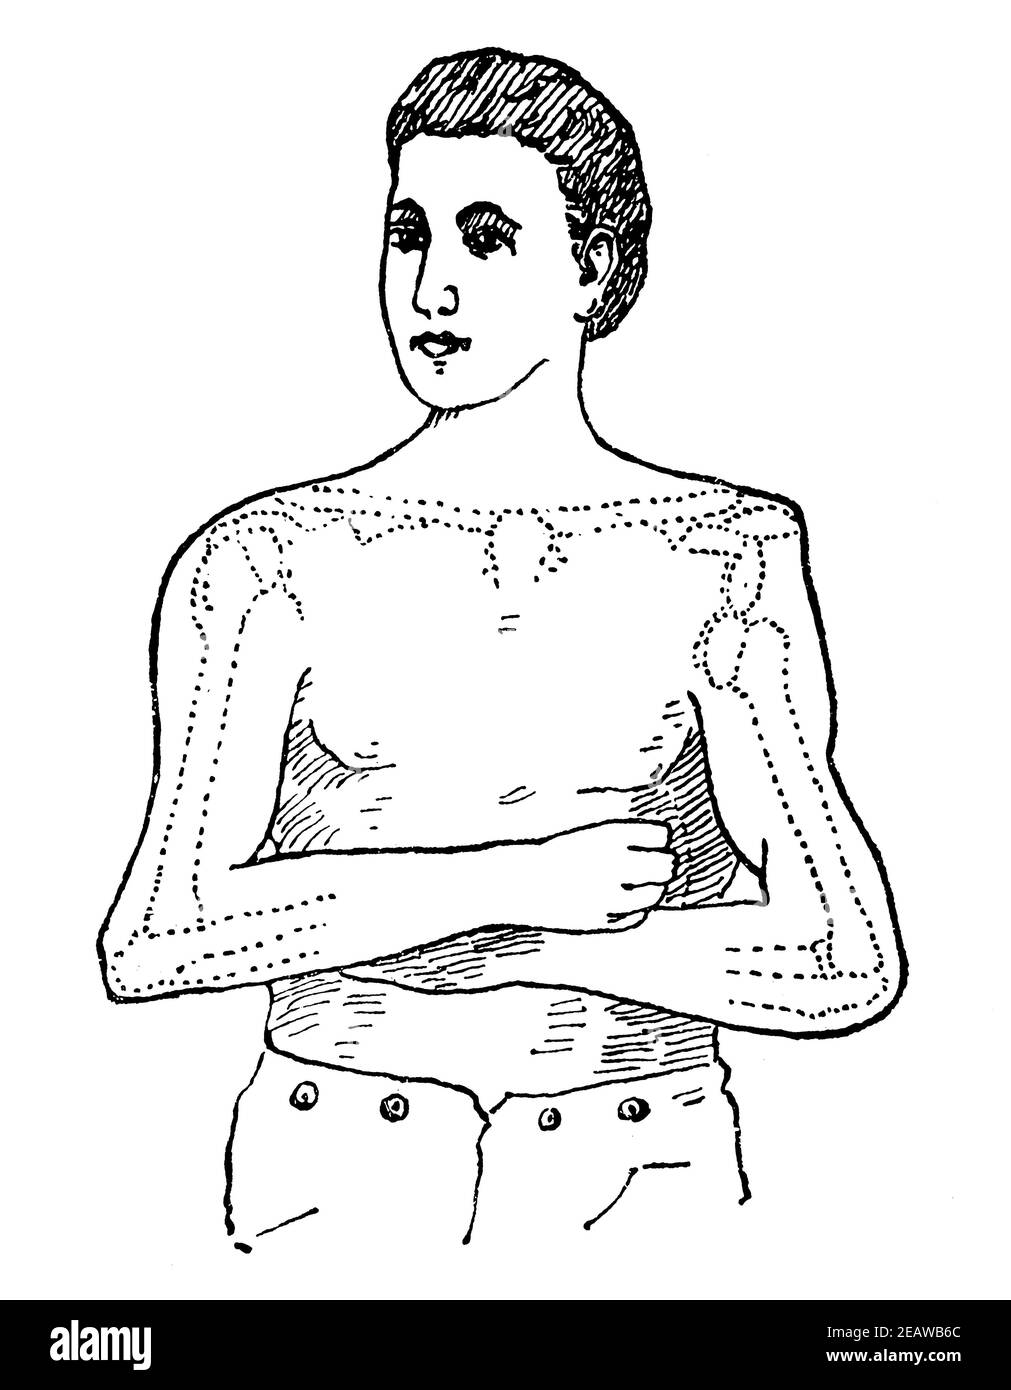 Representación esquemática de la dislocación de la articulación del hombro. Ilustración del siglo 19. Alemania. Fondo blanco. Foto de stock